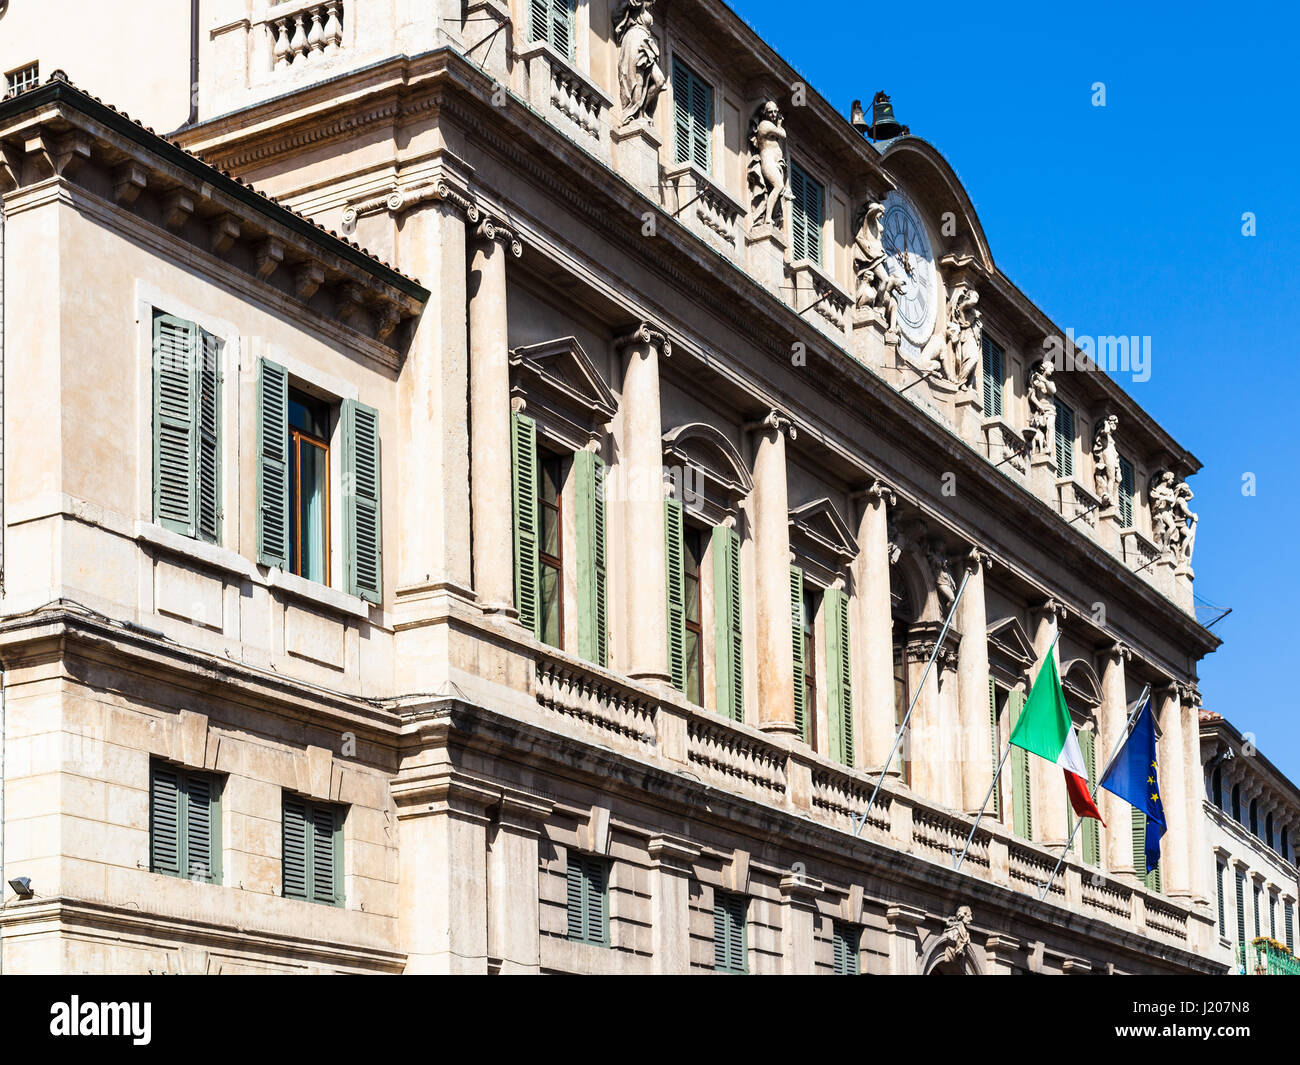 Vérone, ITALIE - 29 mars 2017 : création de la Banque d'Italie (Banca d'Italia) sur le Corso Cavour street. La Direction générale effectue les tâches de trésorerie de l'Etat Banque D'Images